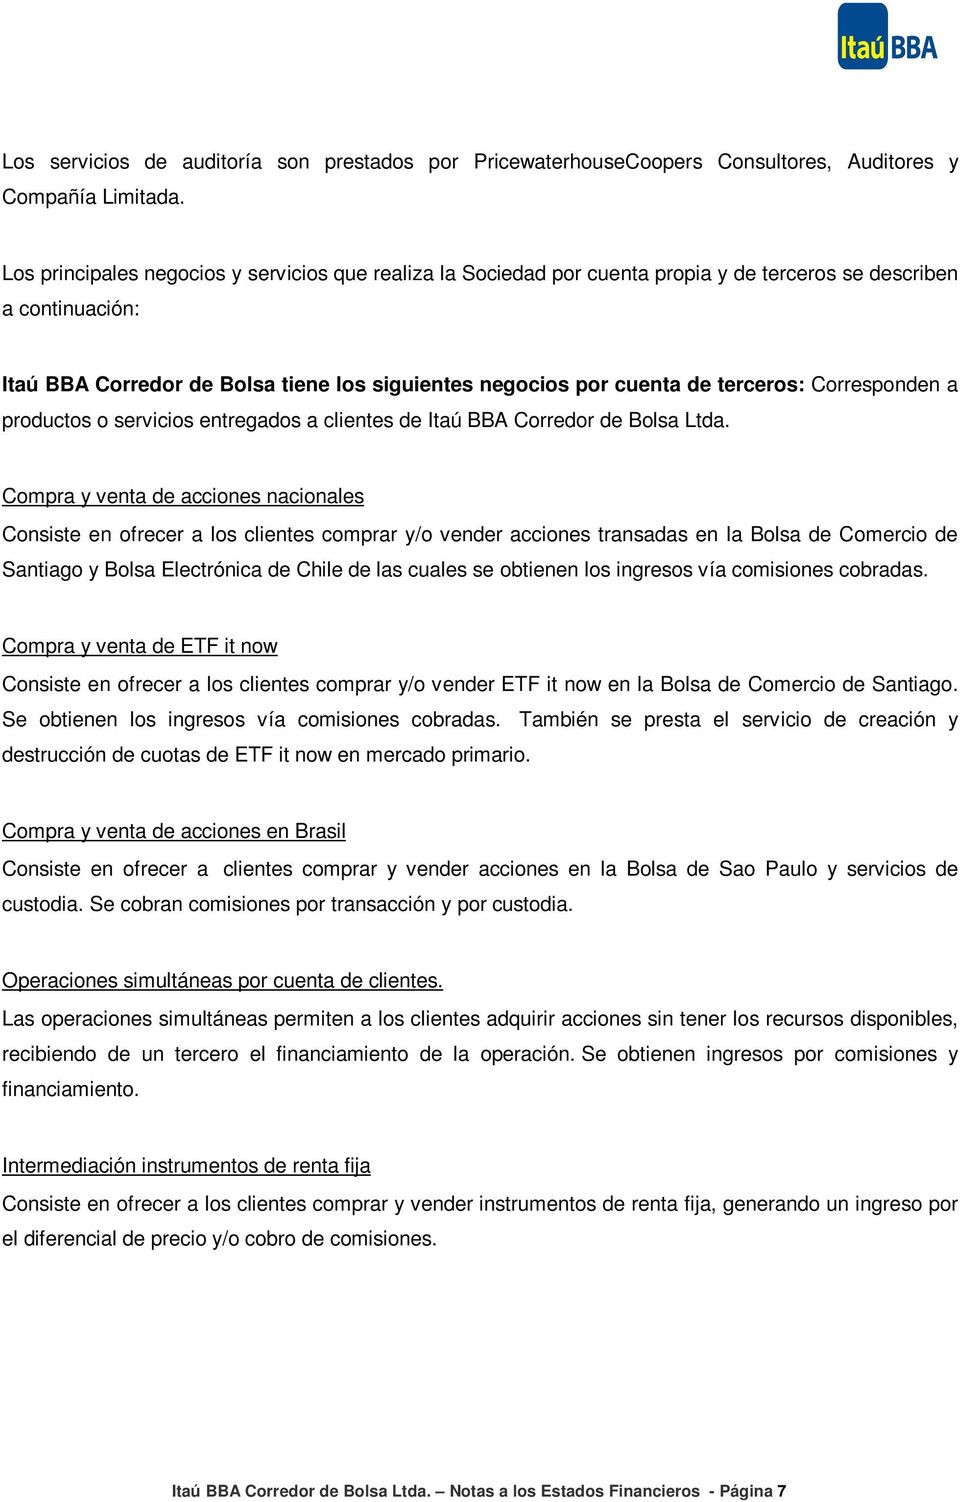 terceros: Corresponden a productos o servicios entregados a clientes de Itaú BBA Corredor de Bolsa Ltda.